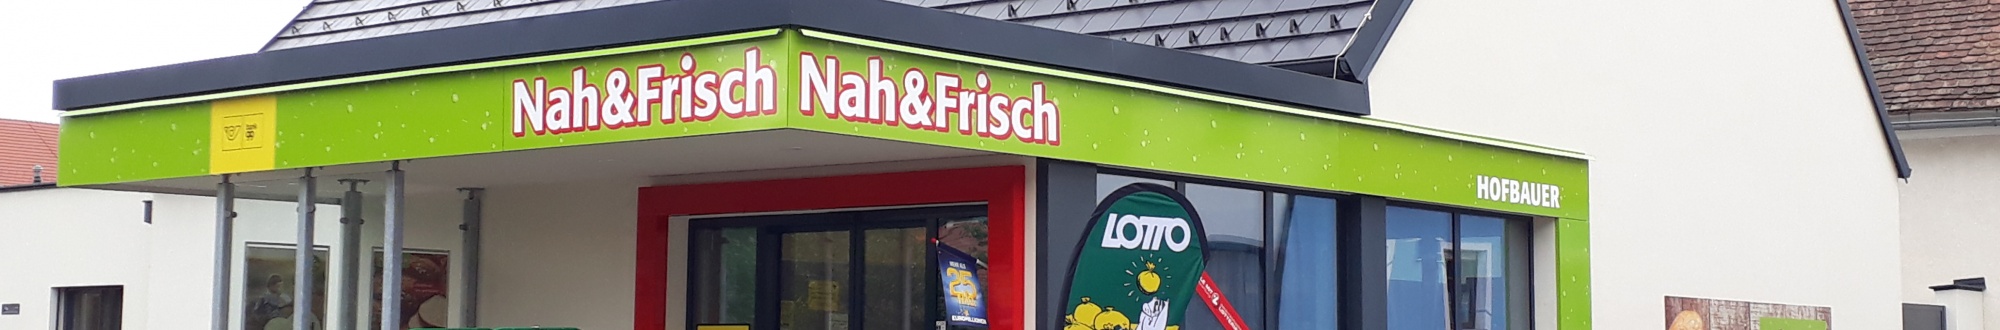 Der neue Nah & Frisch Markt Röschitz von außen.